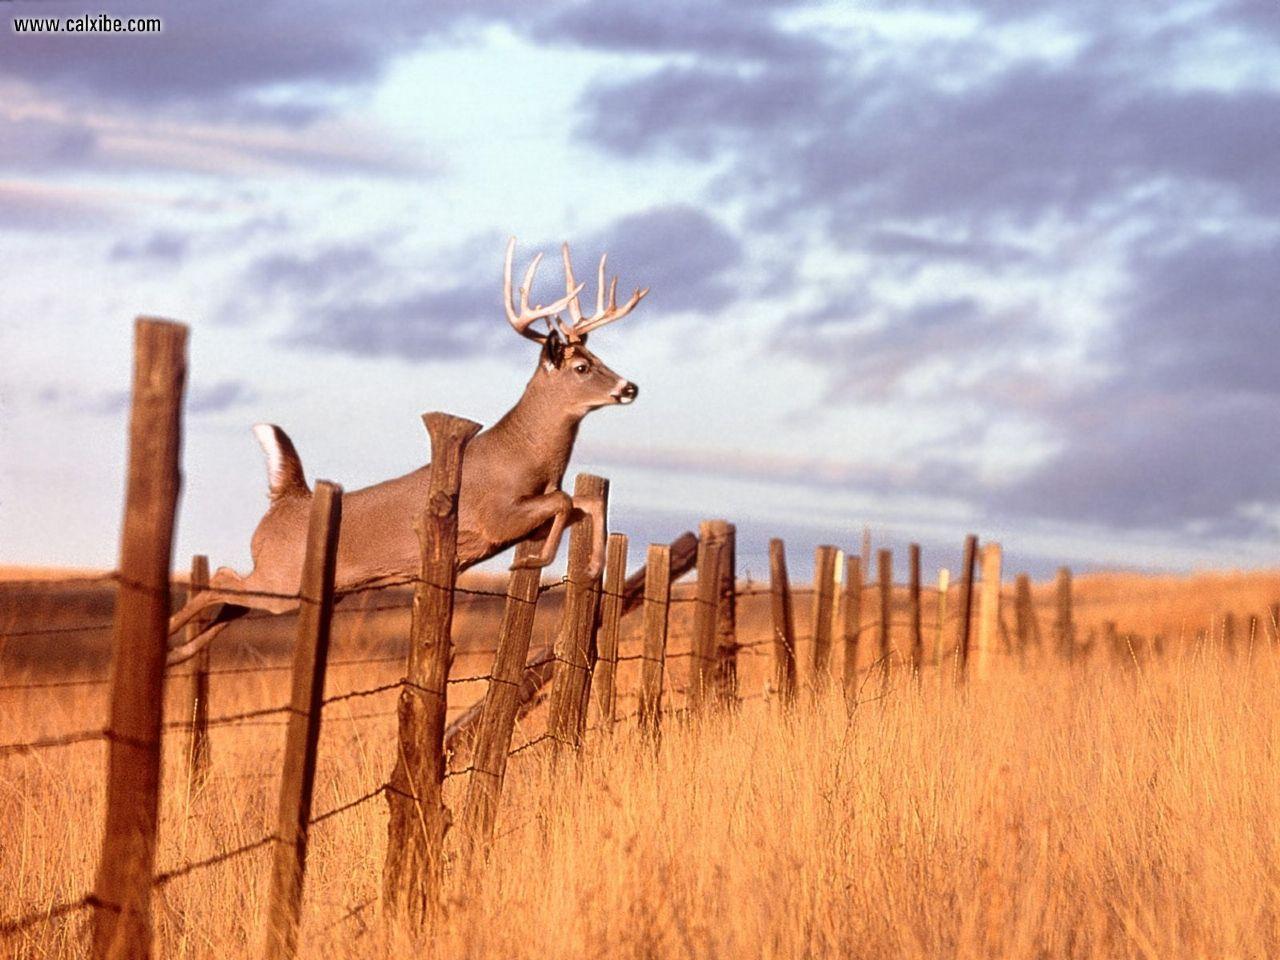 Wallpaper For > Whitetail Deer Hunting Wallpaper